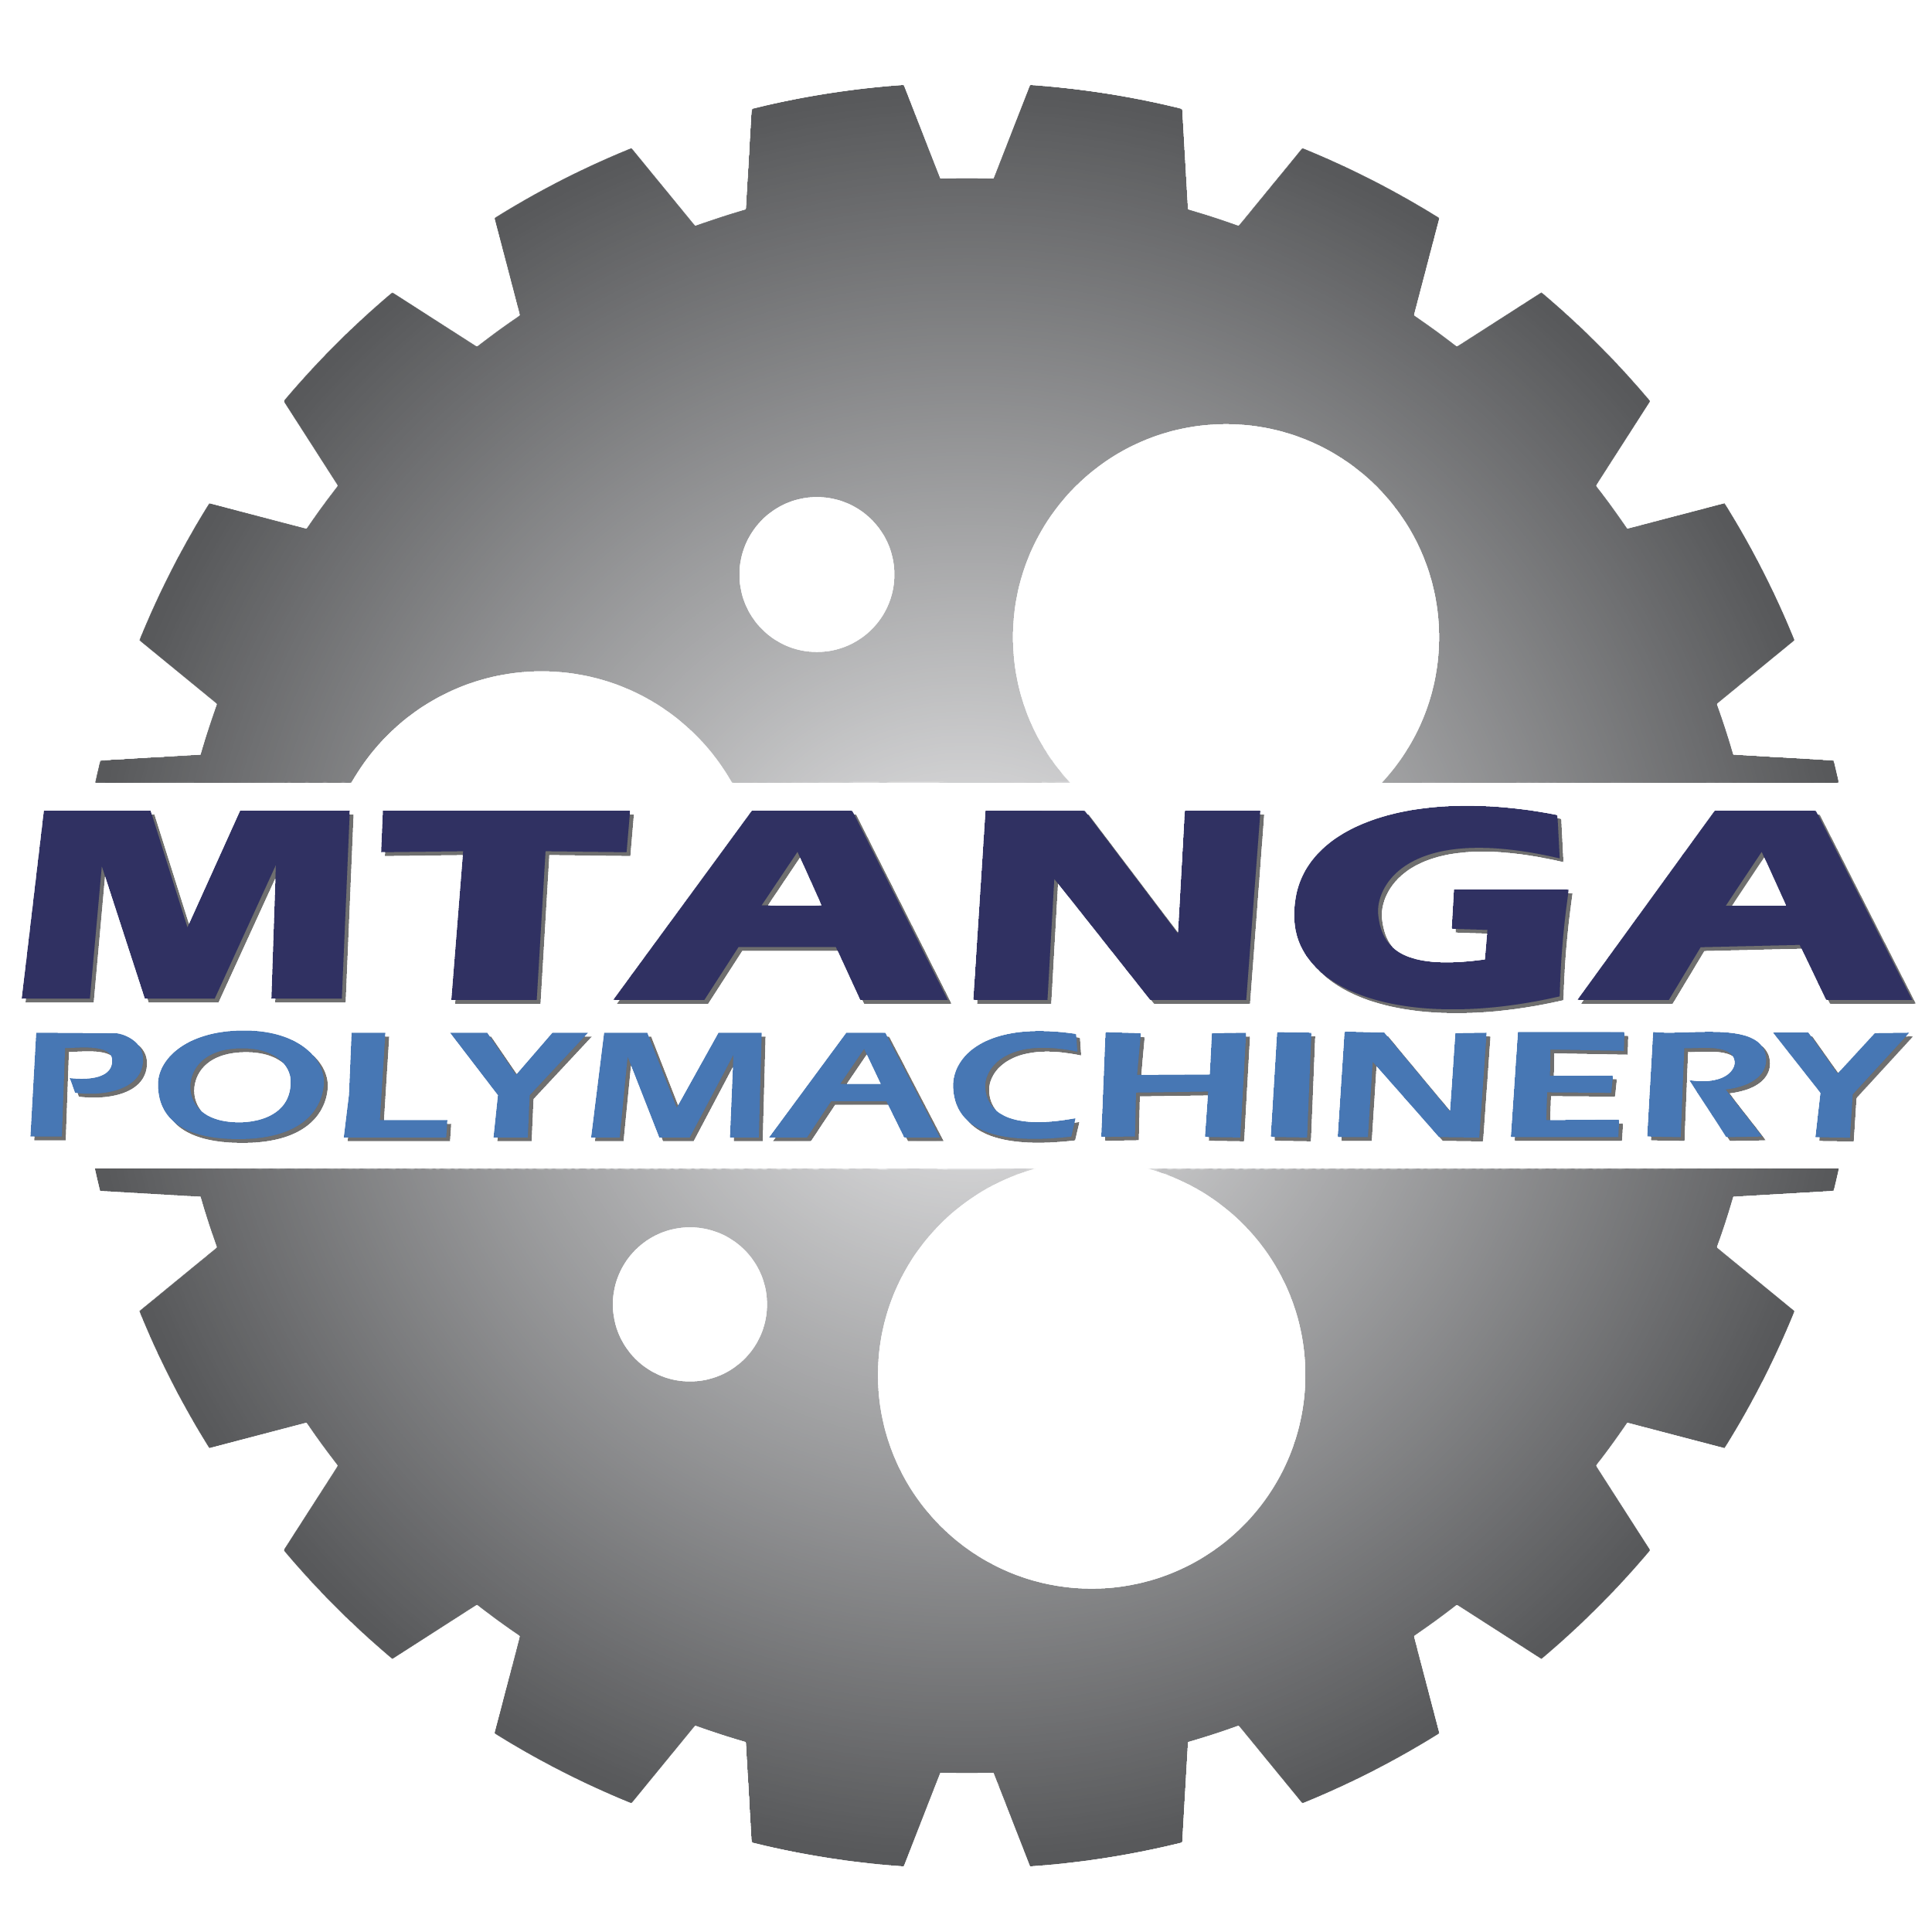 Mtanga Polymachinery